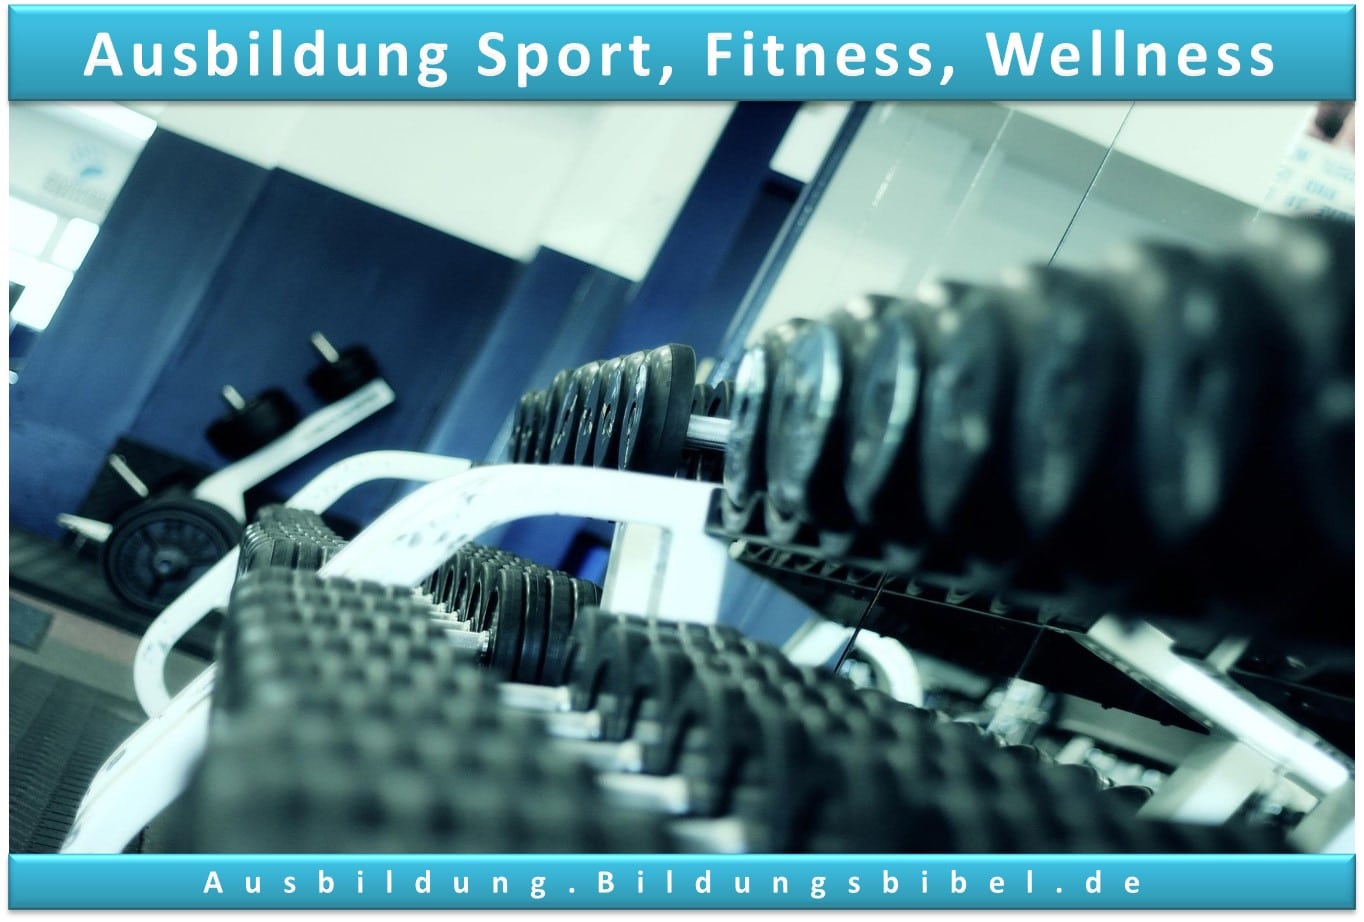 Ausbildung im Bereich Fitness, Sport und Wellness Voraussetzungen, Inhalte, Gehalt, Dauer sowie Zukunft zum Ausbildungsberuf.